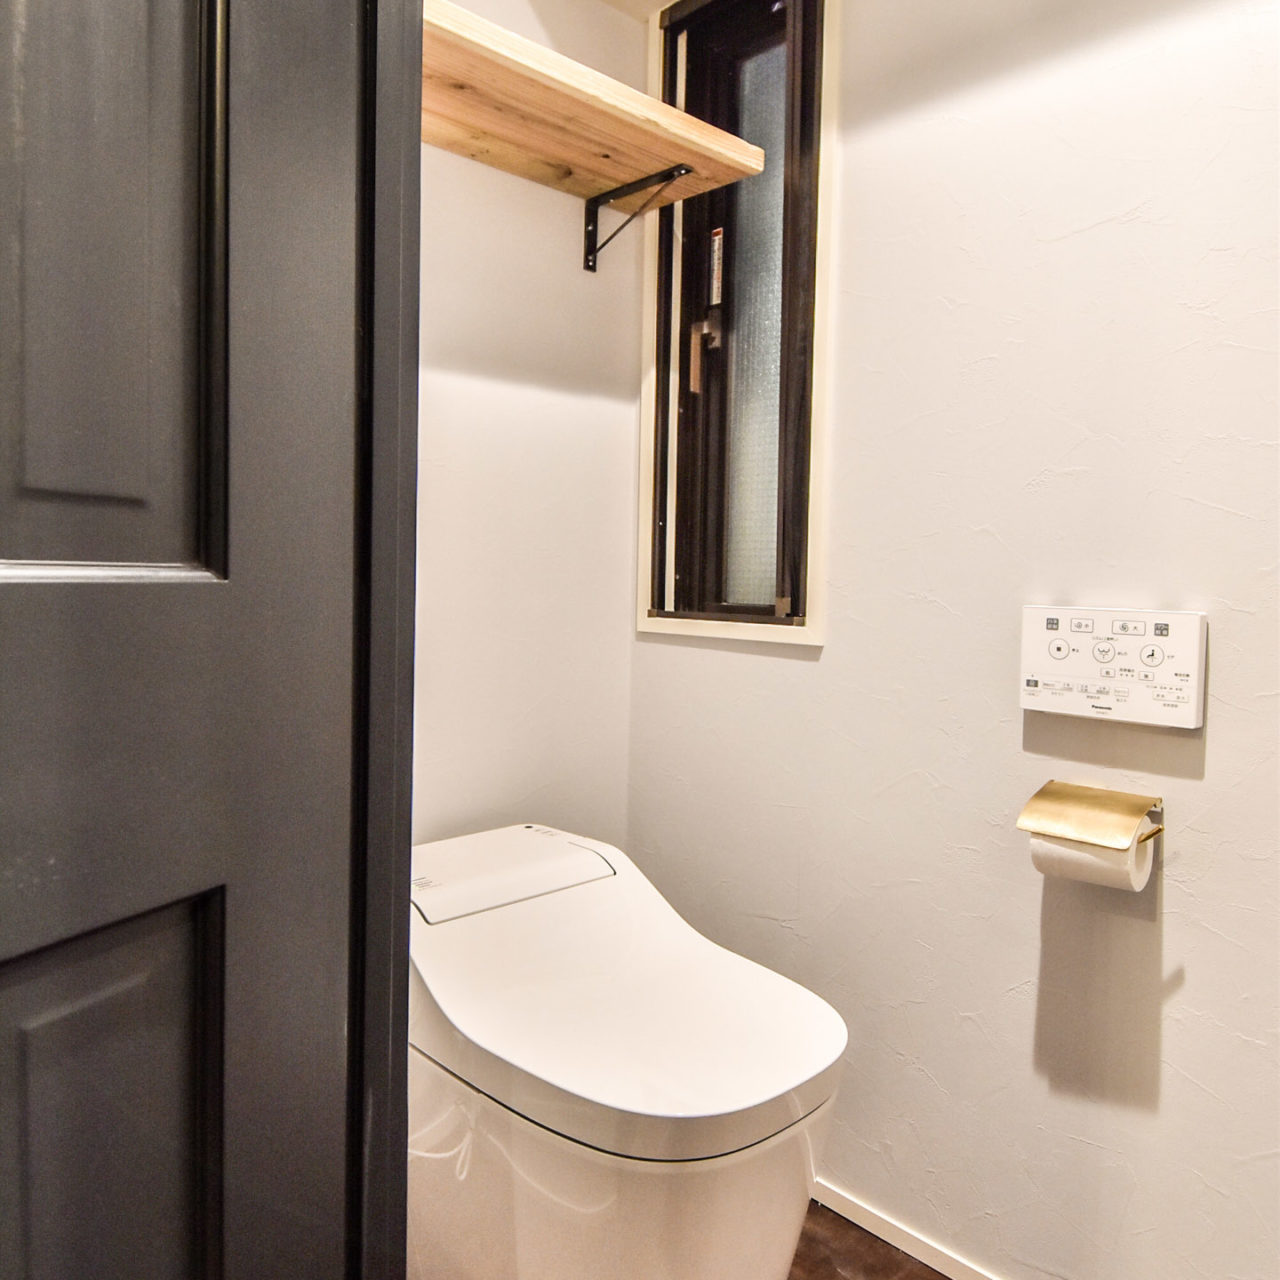 タンクレスのトイレと真鍮のペーパーホルダー